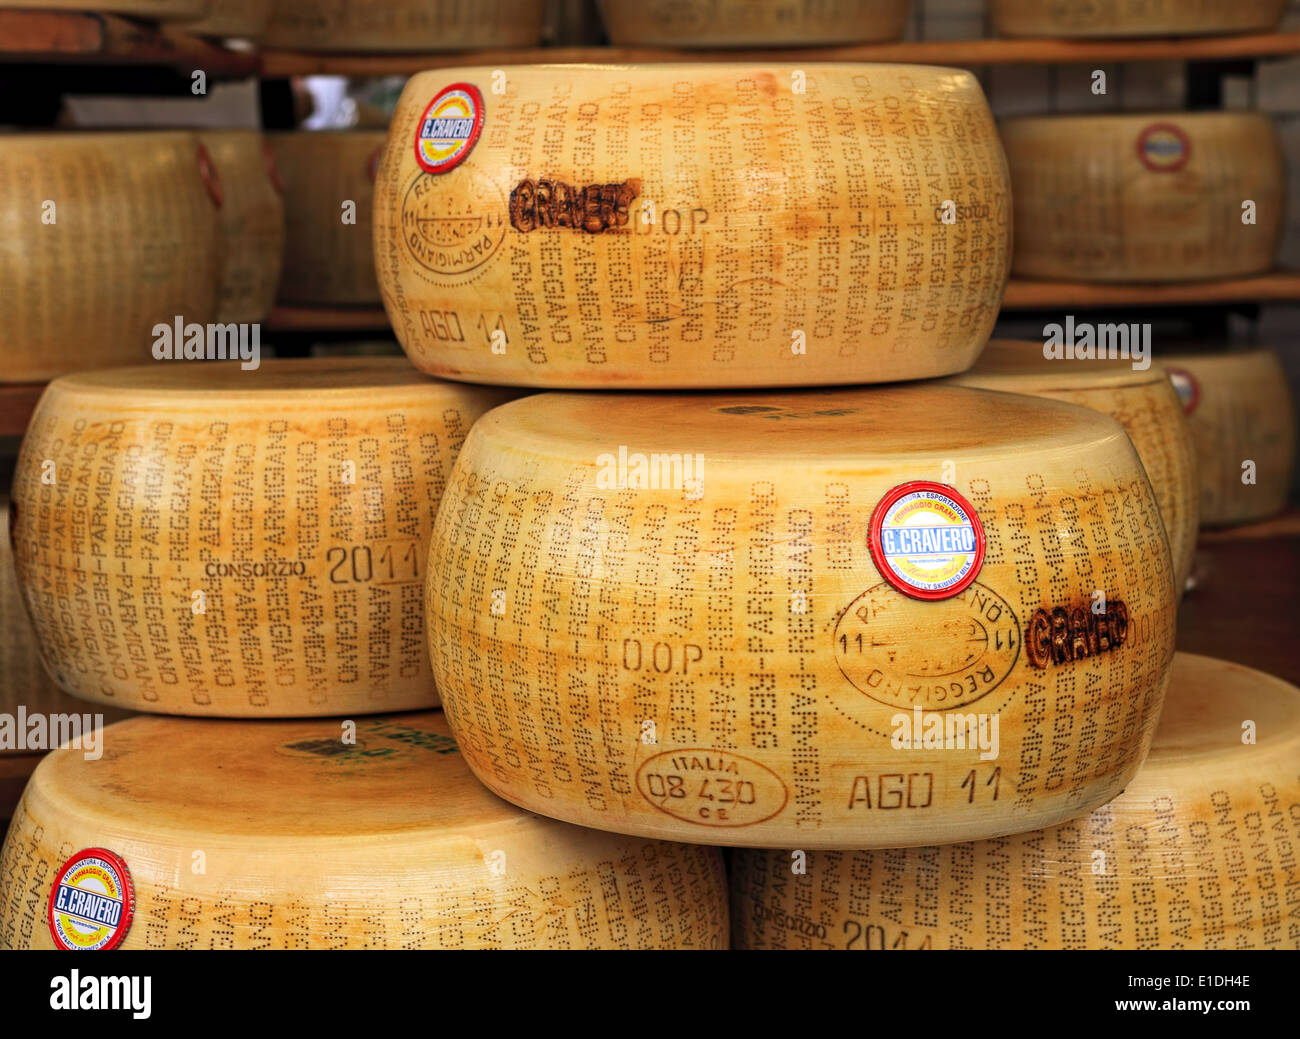 Roues de fromage Parmesan sur le marché en Italie. Banque D'Images